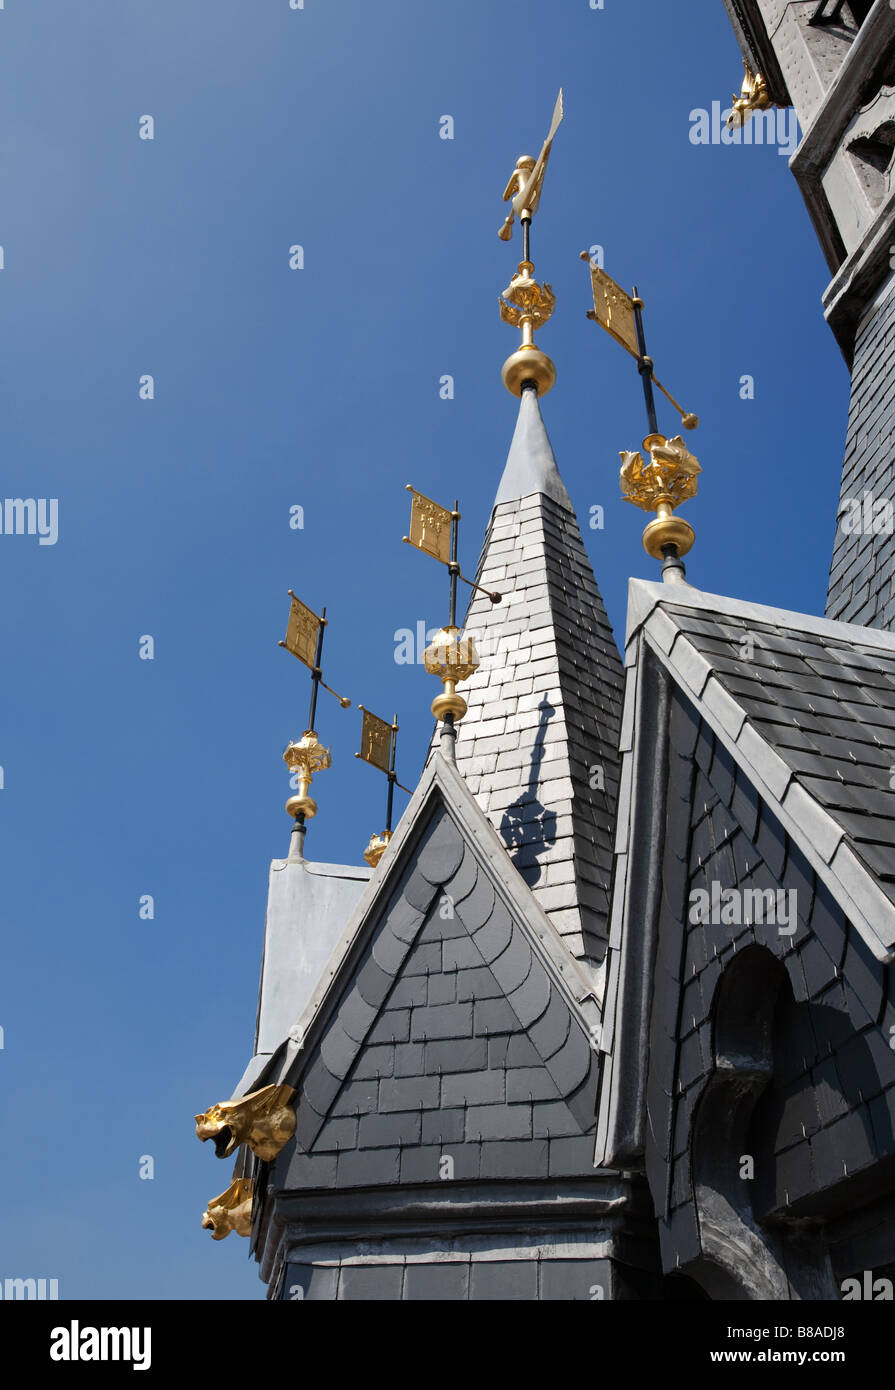 Métal peint d'or et de gargouilles girouettes drapeau sur le toit de la tour du beffroi Tournai Belgique Banque D'Images